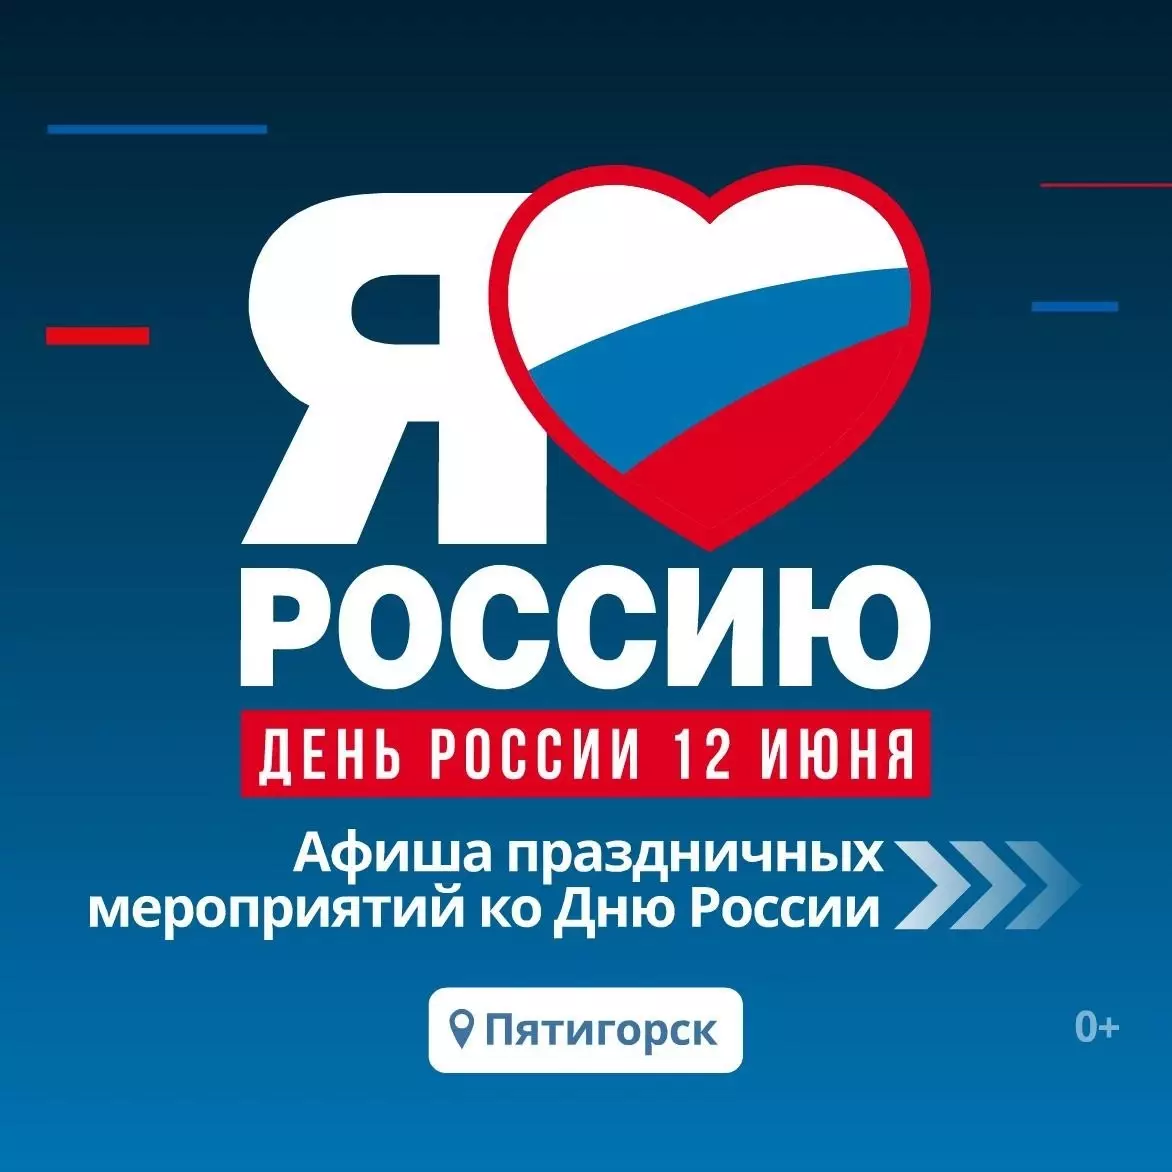 Программу мероприятий на День России составили в Пятигорске4